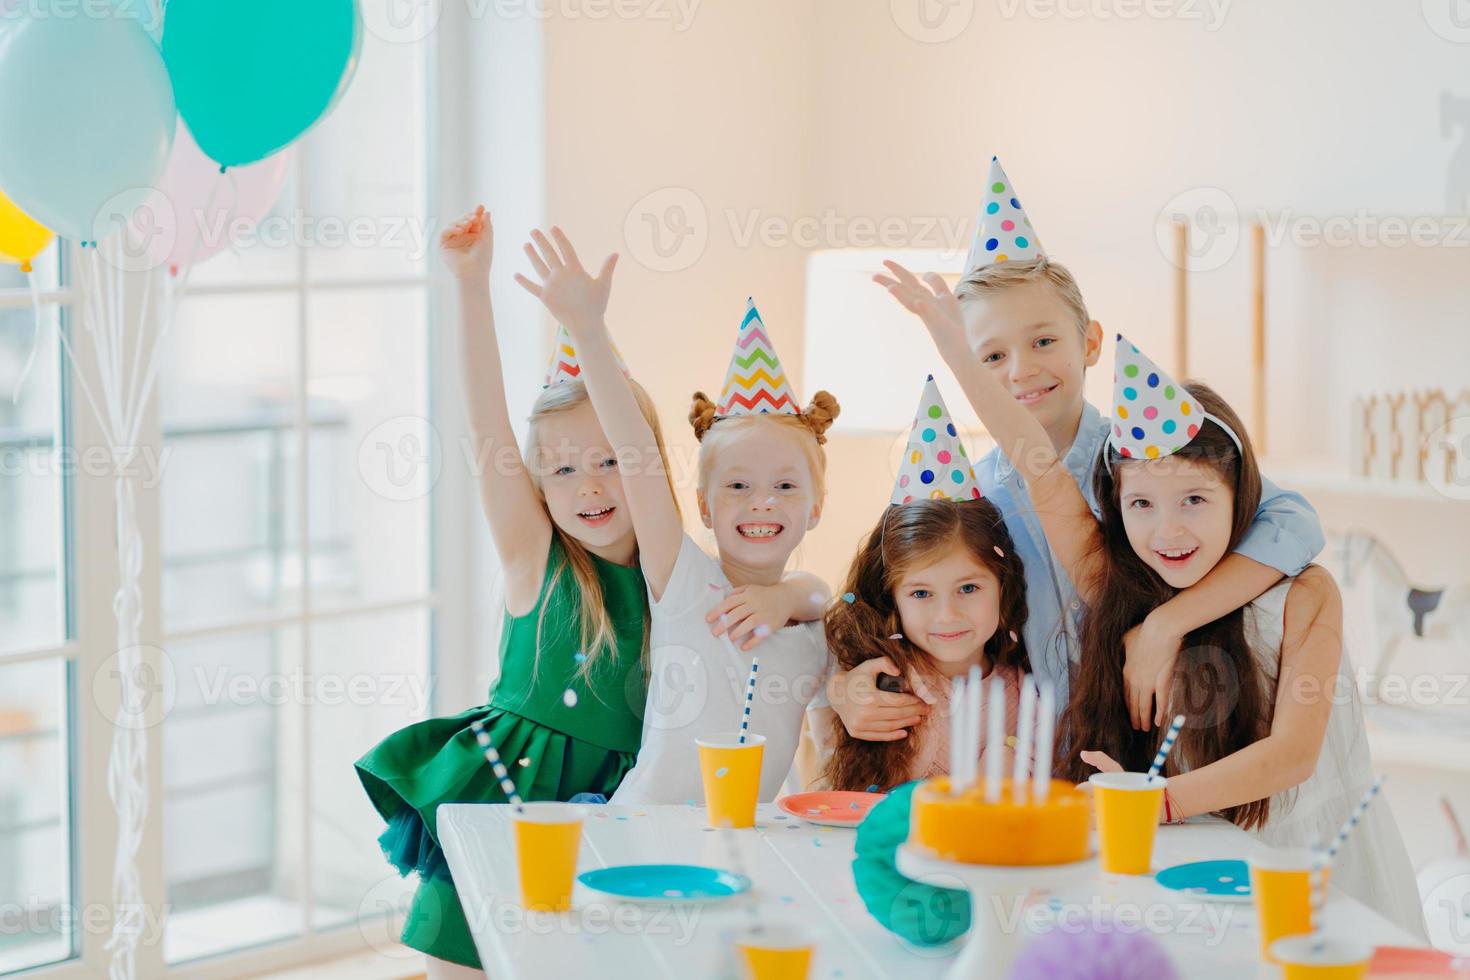 barnfest och firande koncept. grupp små barn vänner gör foto tillsammans, höjer armarna och ler glatt, har födelsedagsfest, festligt evenemang, dumt runt